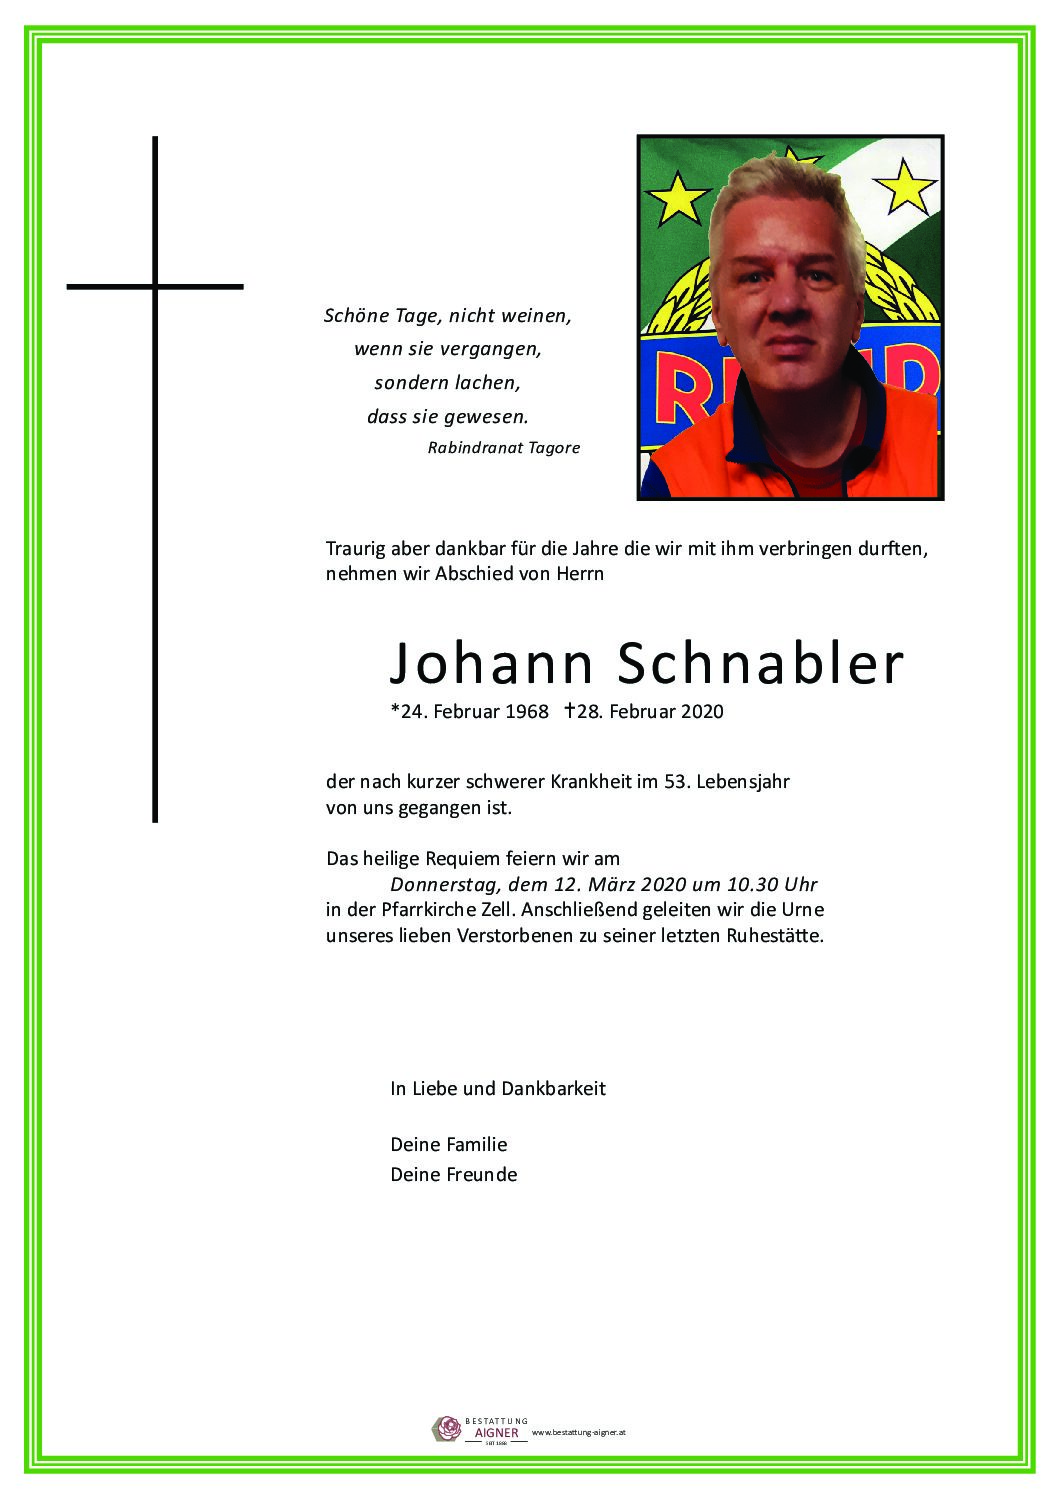 Johann Schnabler